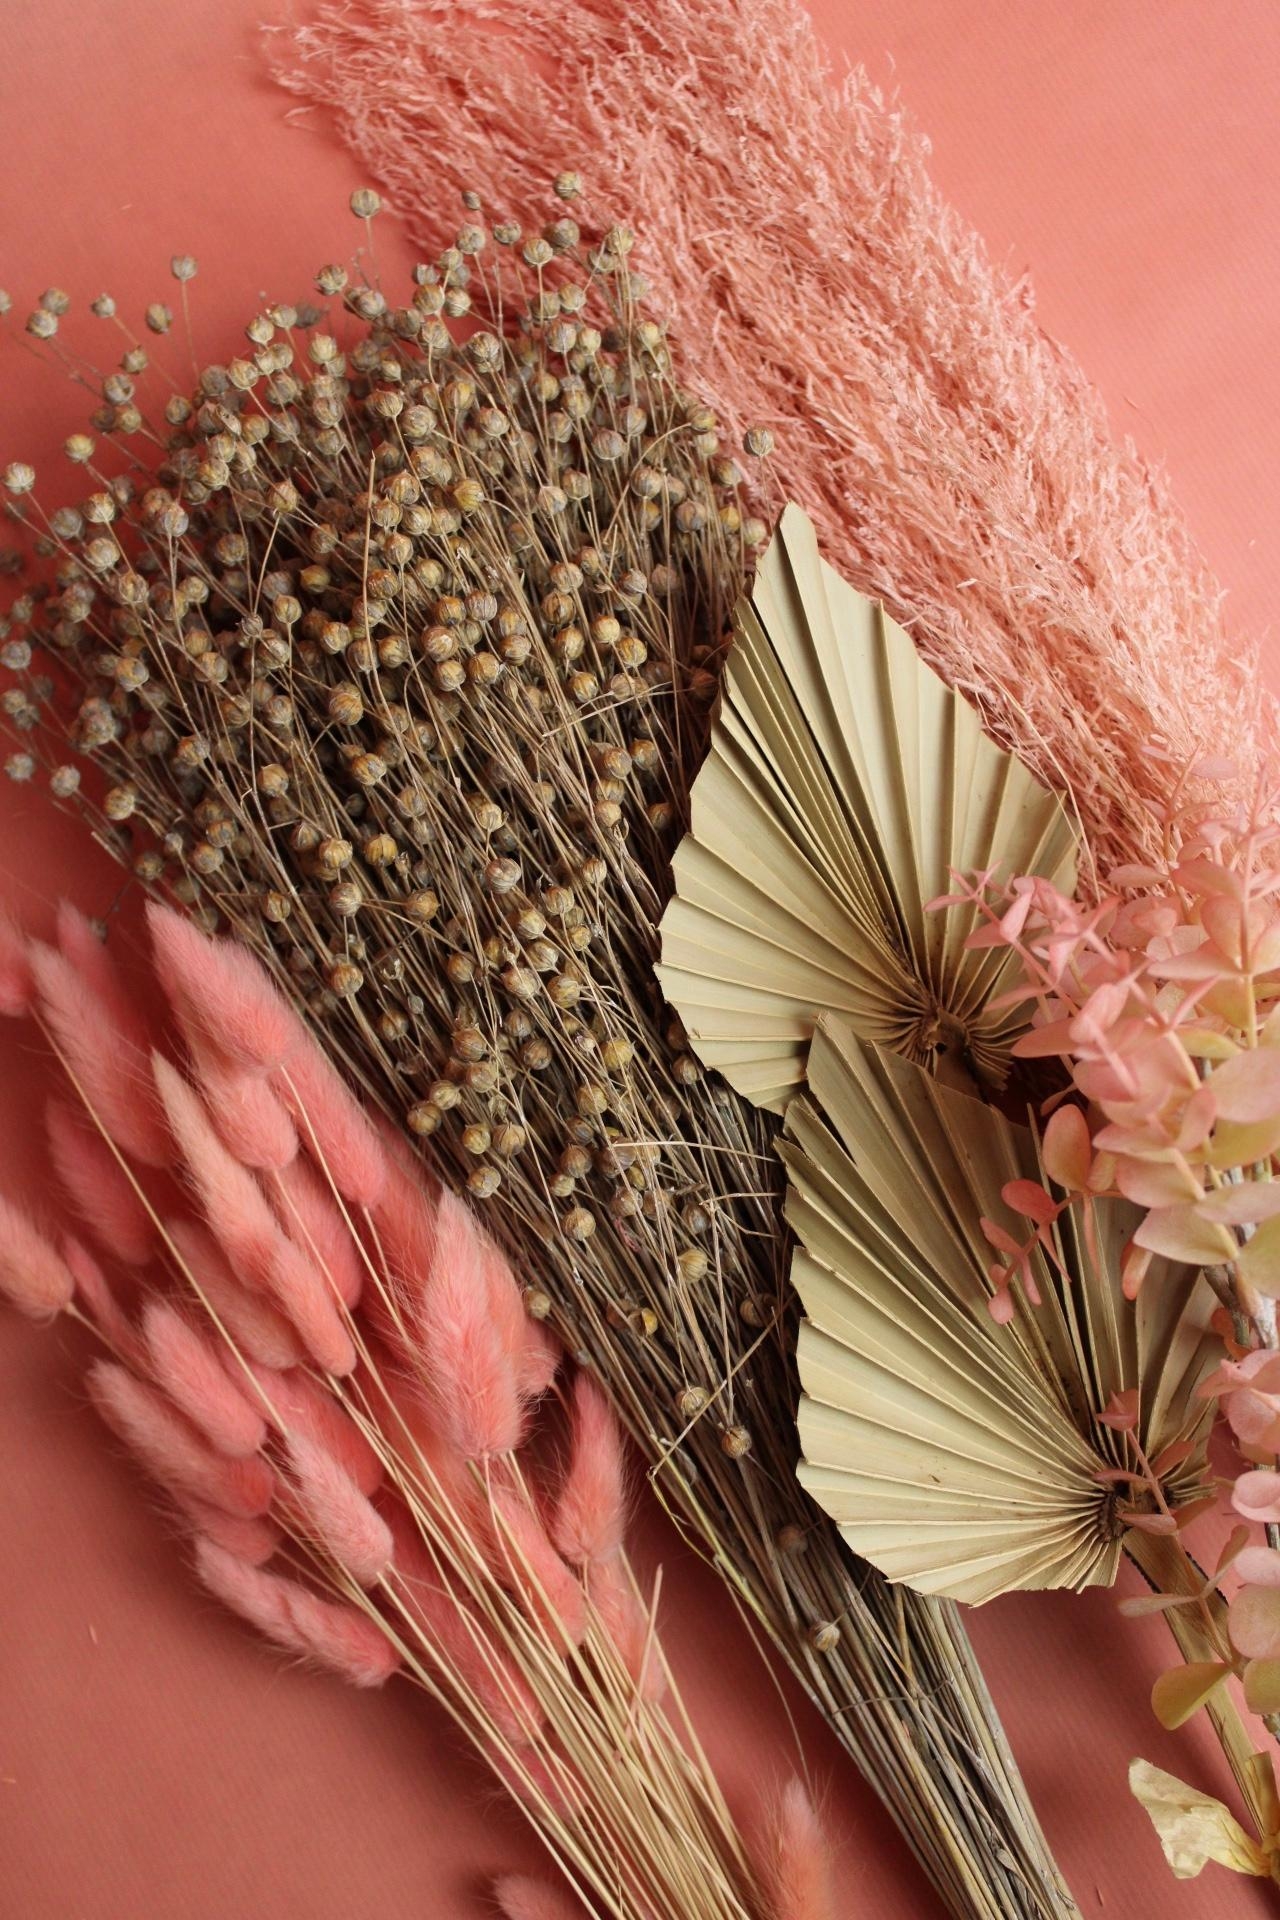 Ein Traum in Rosa ist diese Trockenblumen-Box. Perfekt für deine nächste #kreativzeit

#trockenblumen #vasenglueck